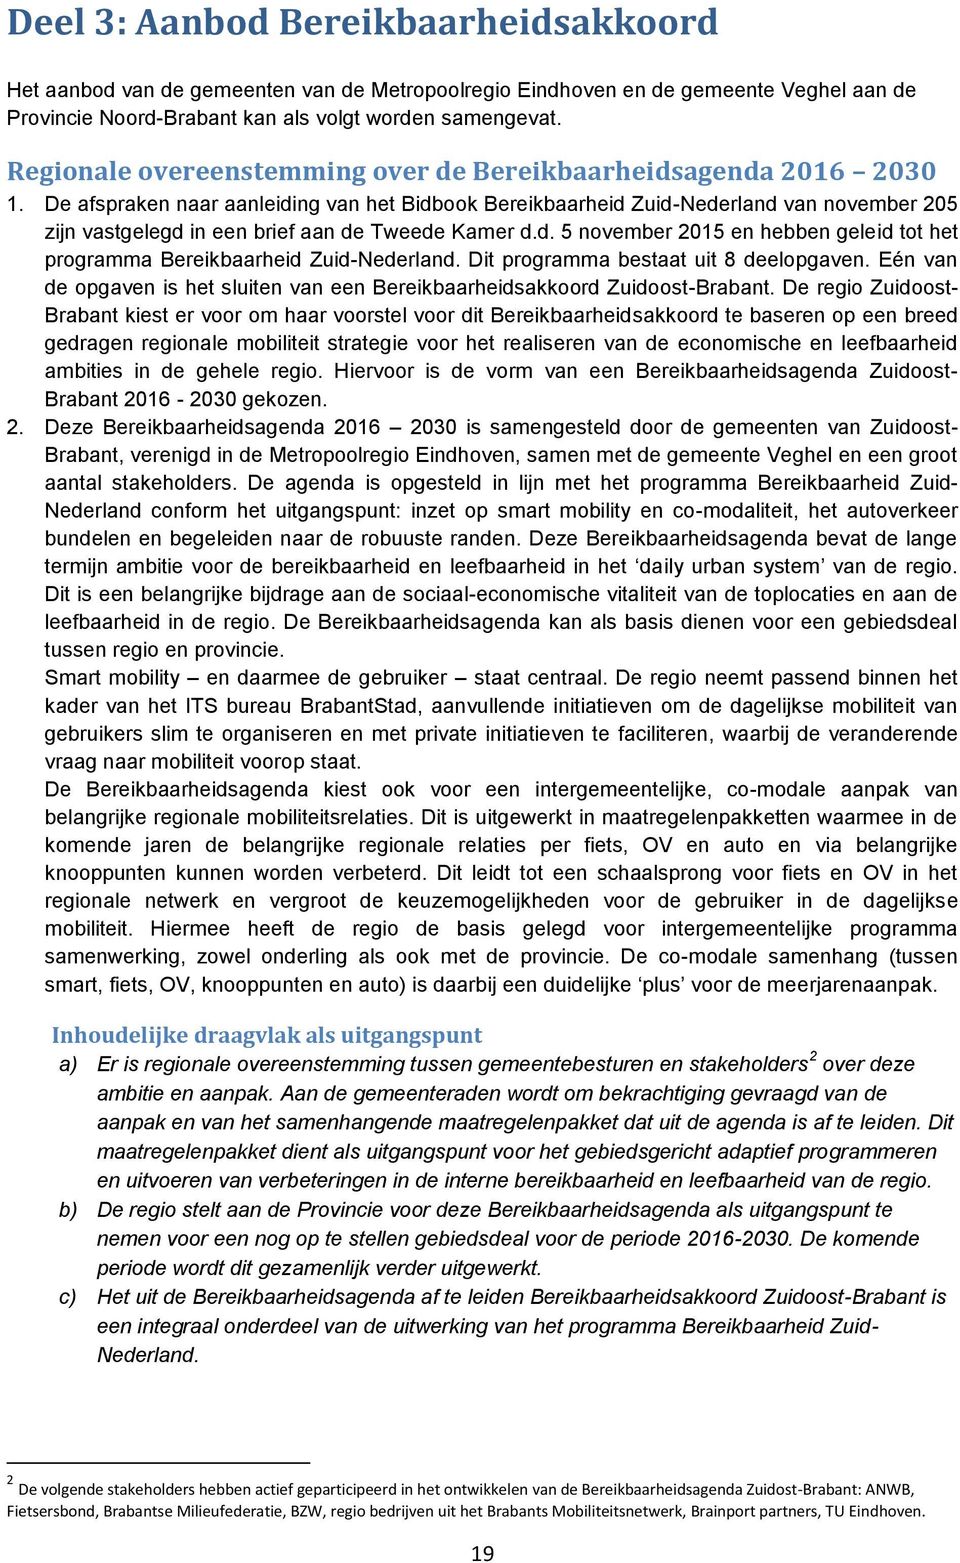 De afspraken naar aanleiding van het Bidbook Bereikbaarheid Zuid-Nederland van november 205 zijn vastgelegd in een brief aan de Tweede Kamer d.d. 5 november 2015 en hebben geleid tot het programma Bereikbaarheid Zuid-Nederland.